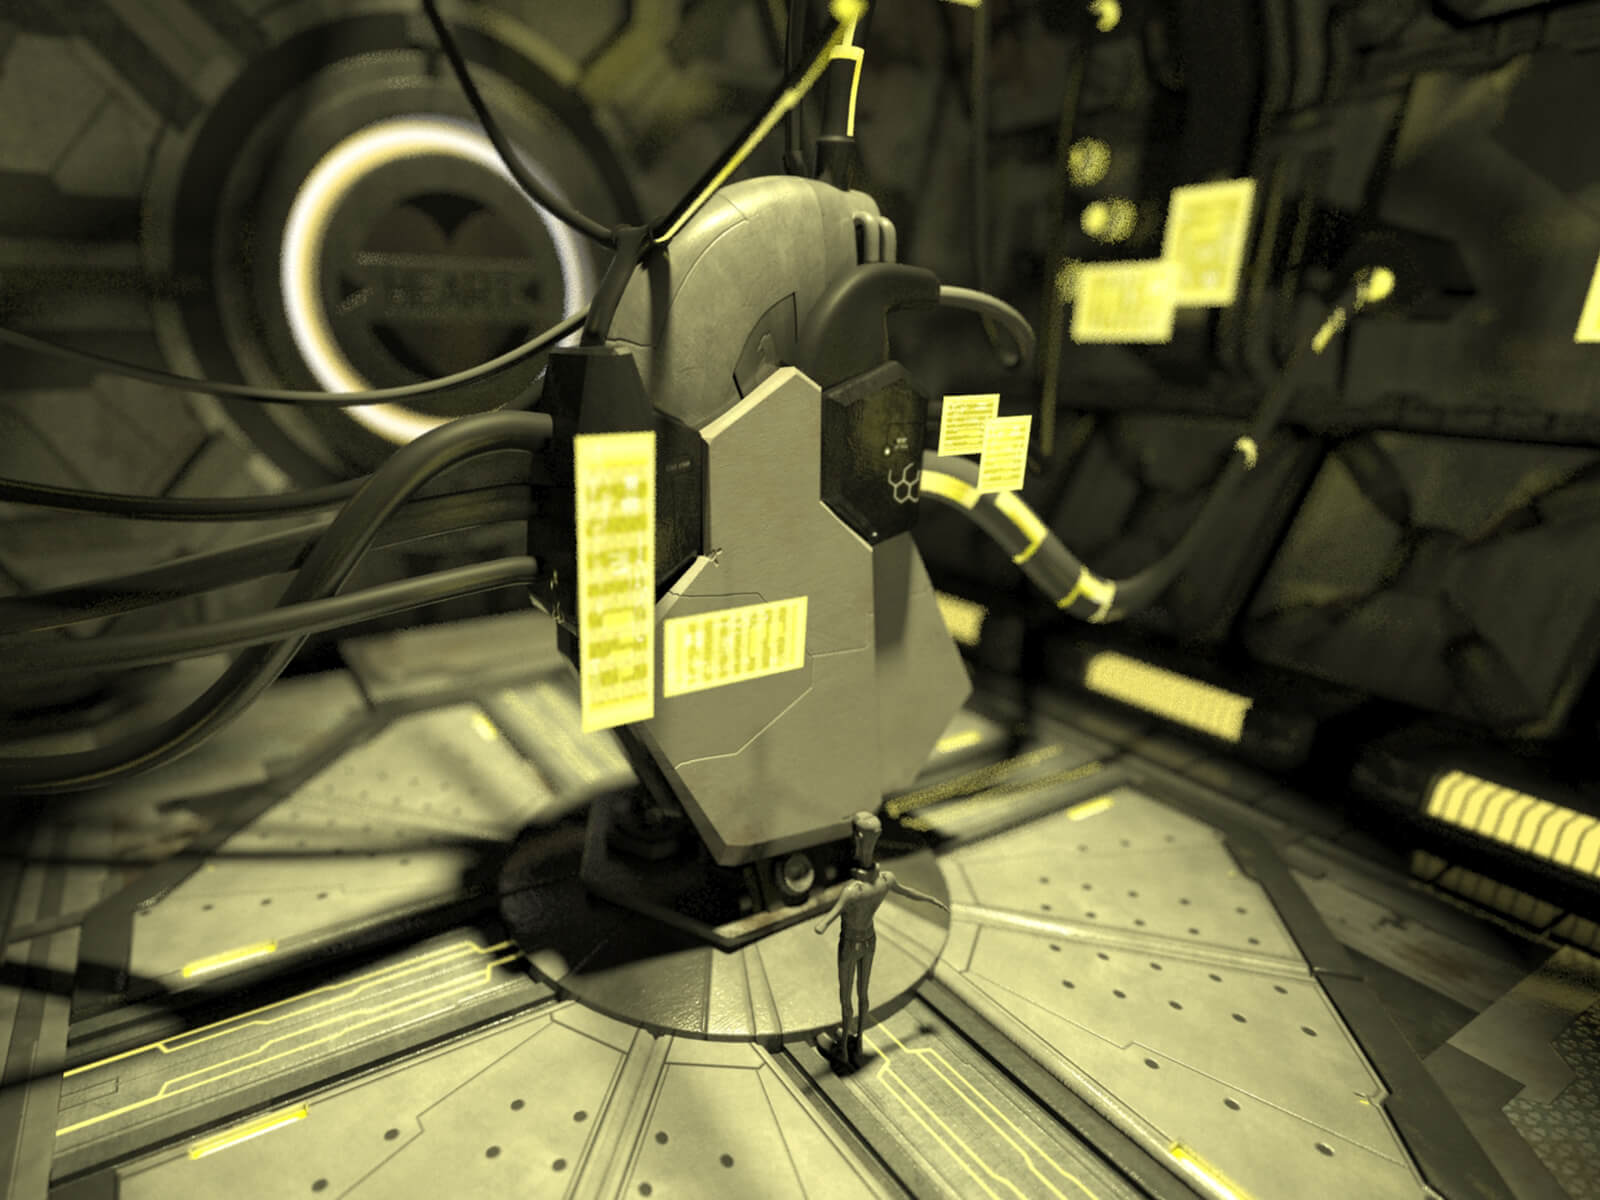 Imagen conceptual en 3D de un hombre de pie ante una imponente estructura metálica mecánica enganchada a las paredes por tubos y cables.